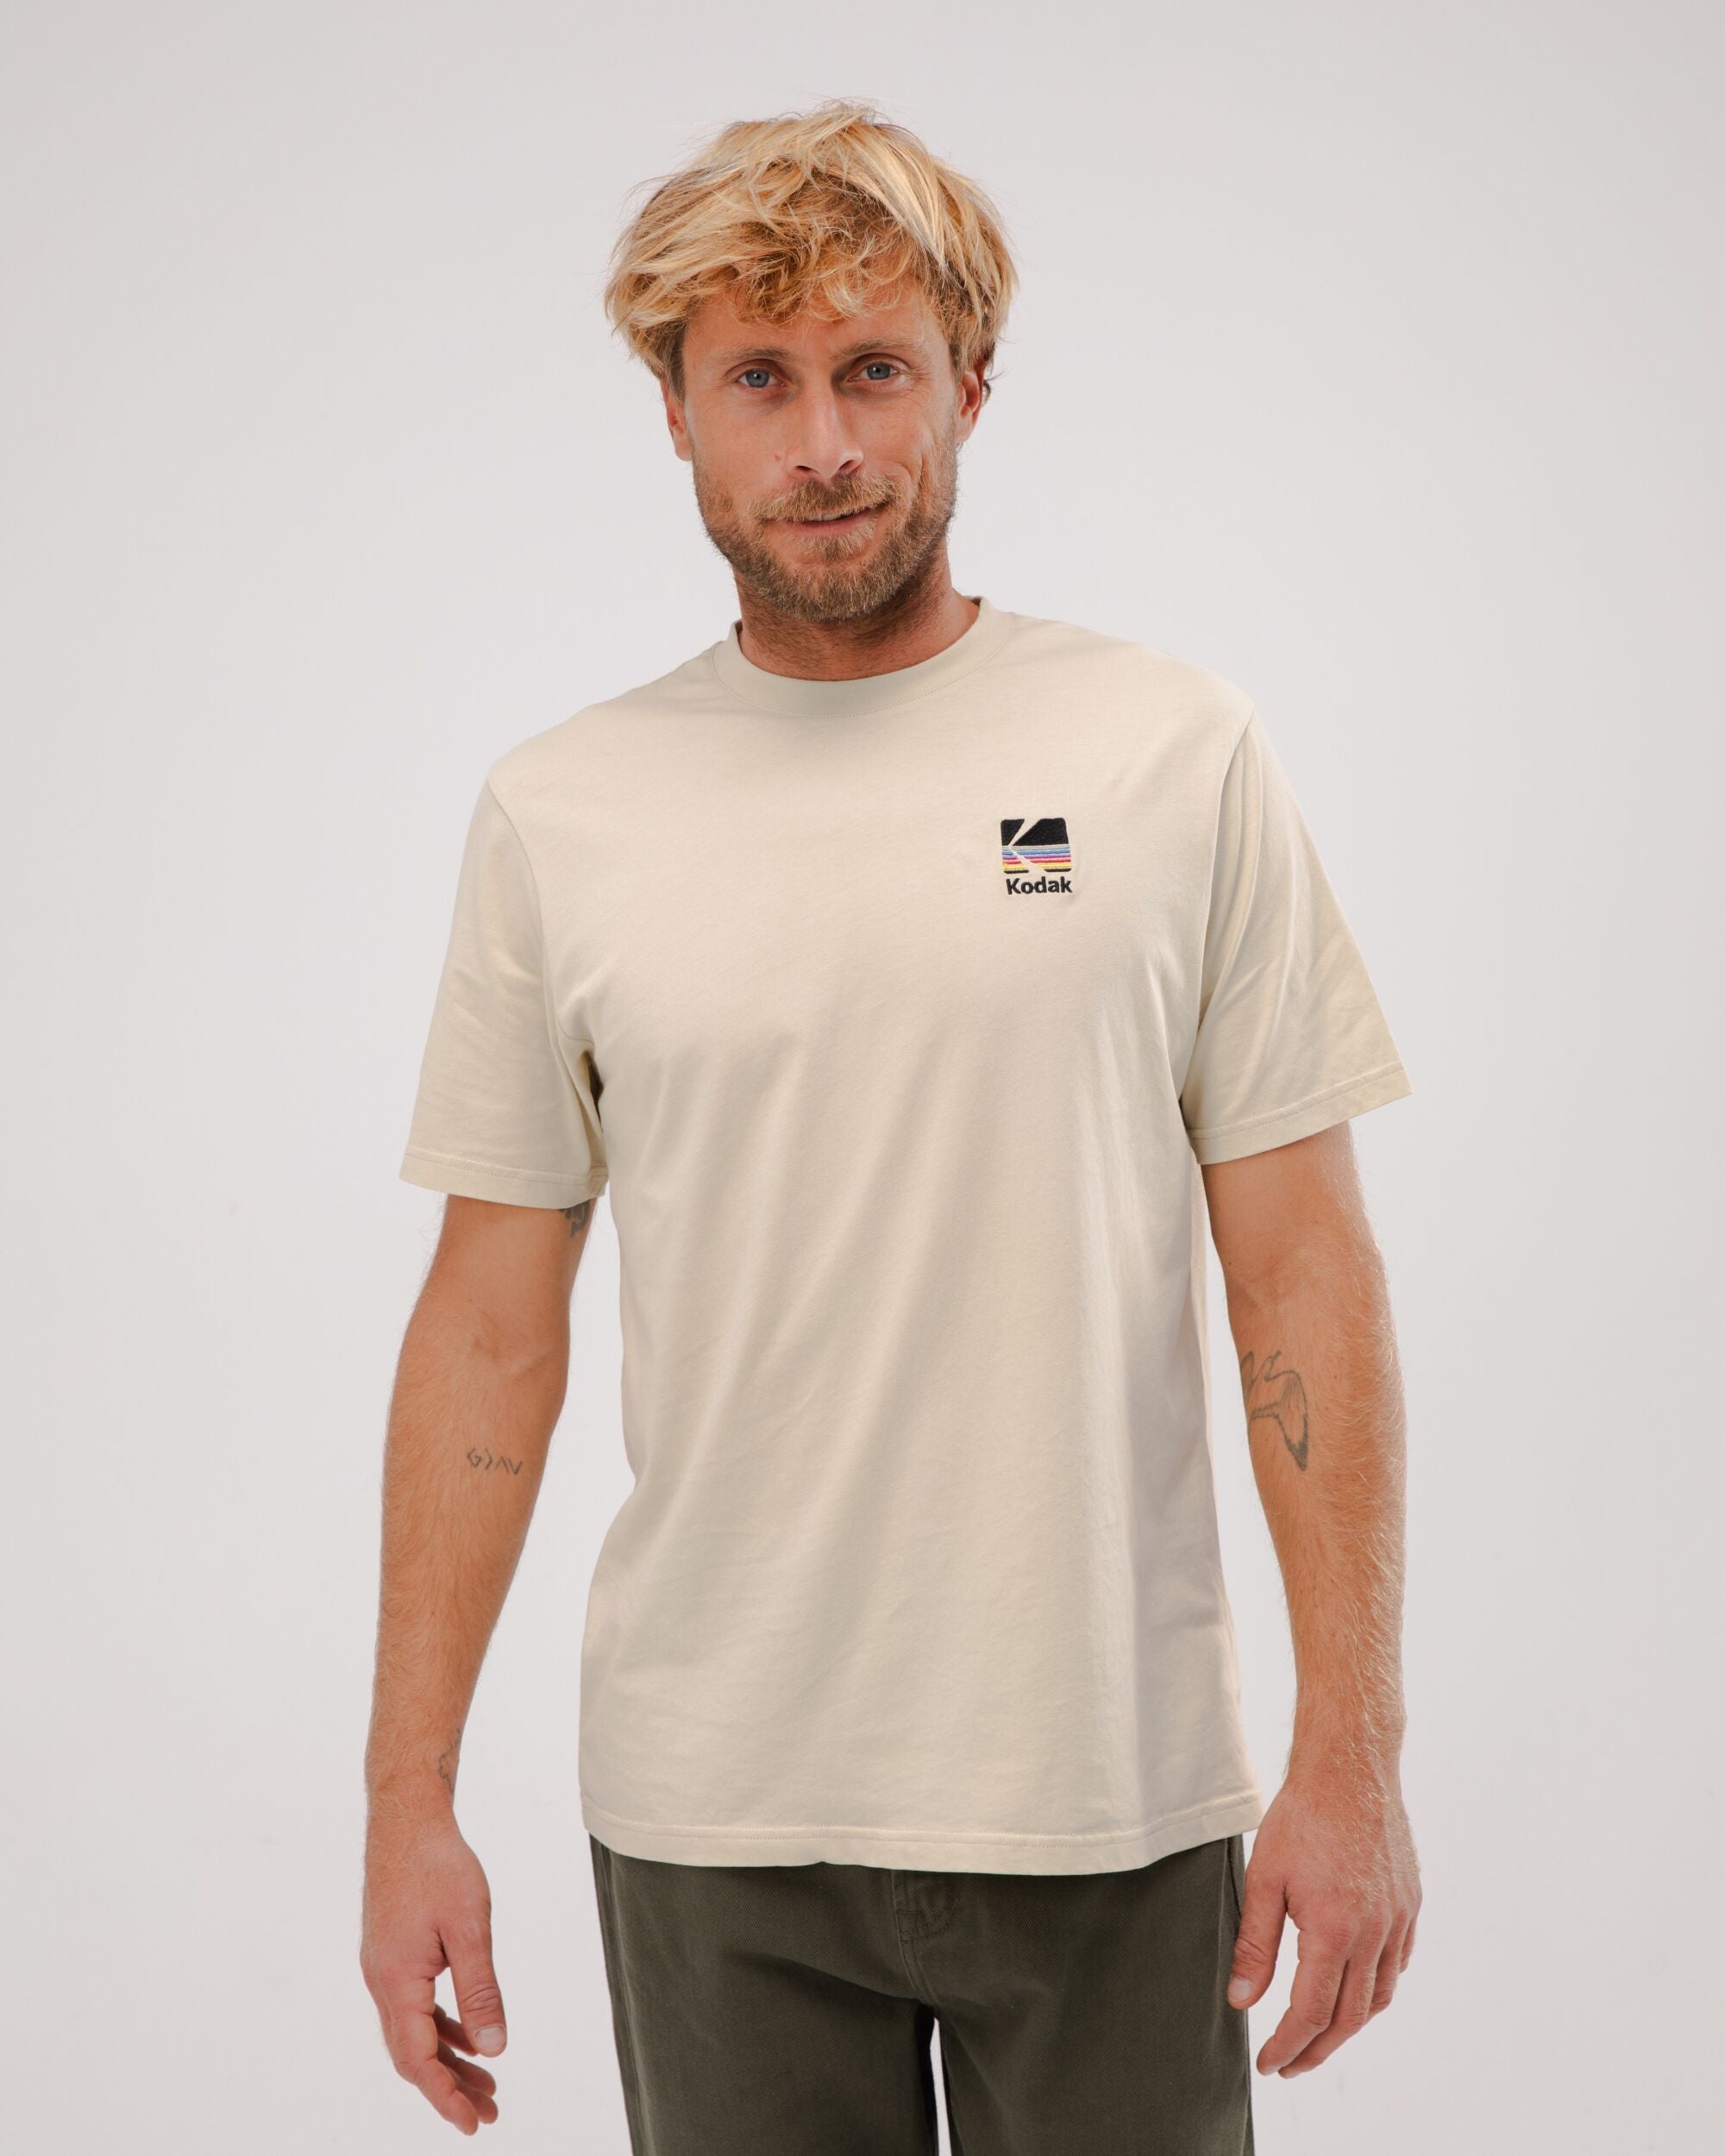 Kodak T-shirt Sand aus Bio Baumwolle von Brava Fabrics